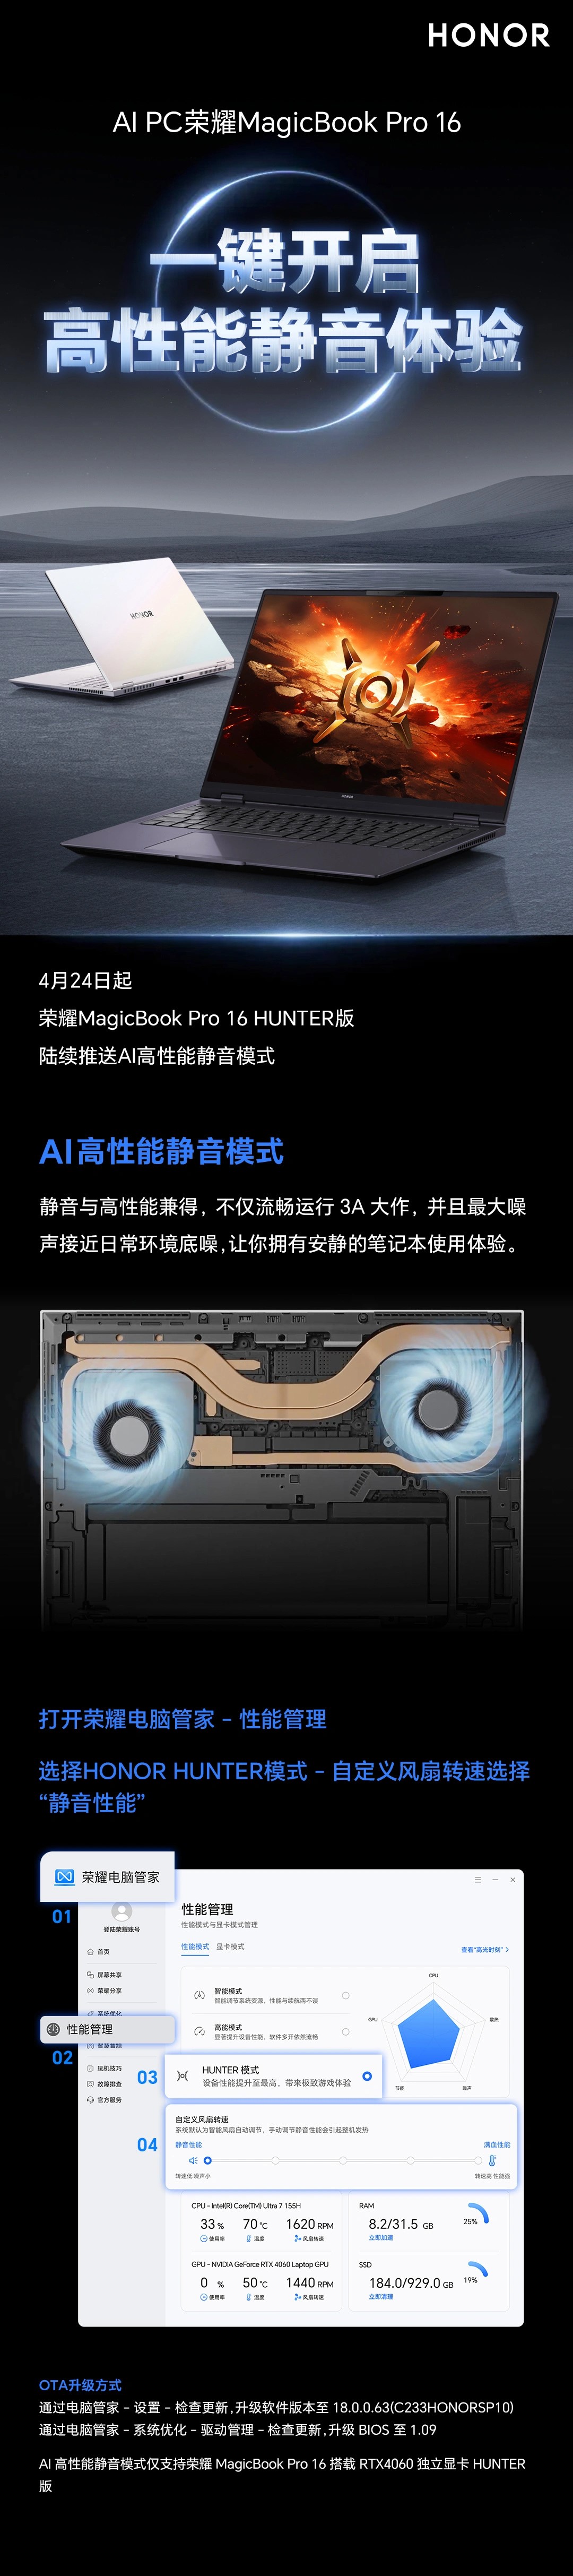 荣耀MagicBook Pro 16.jpg